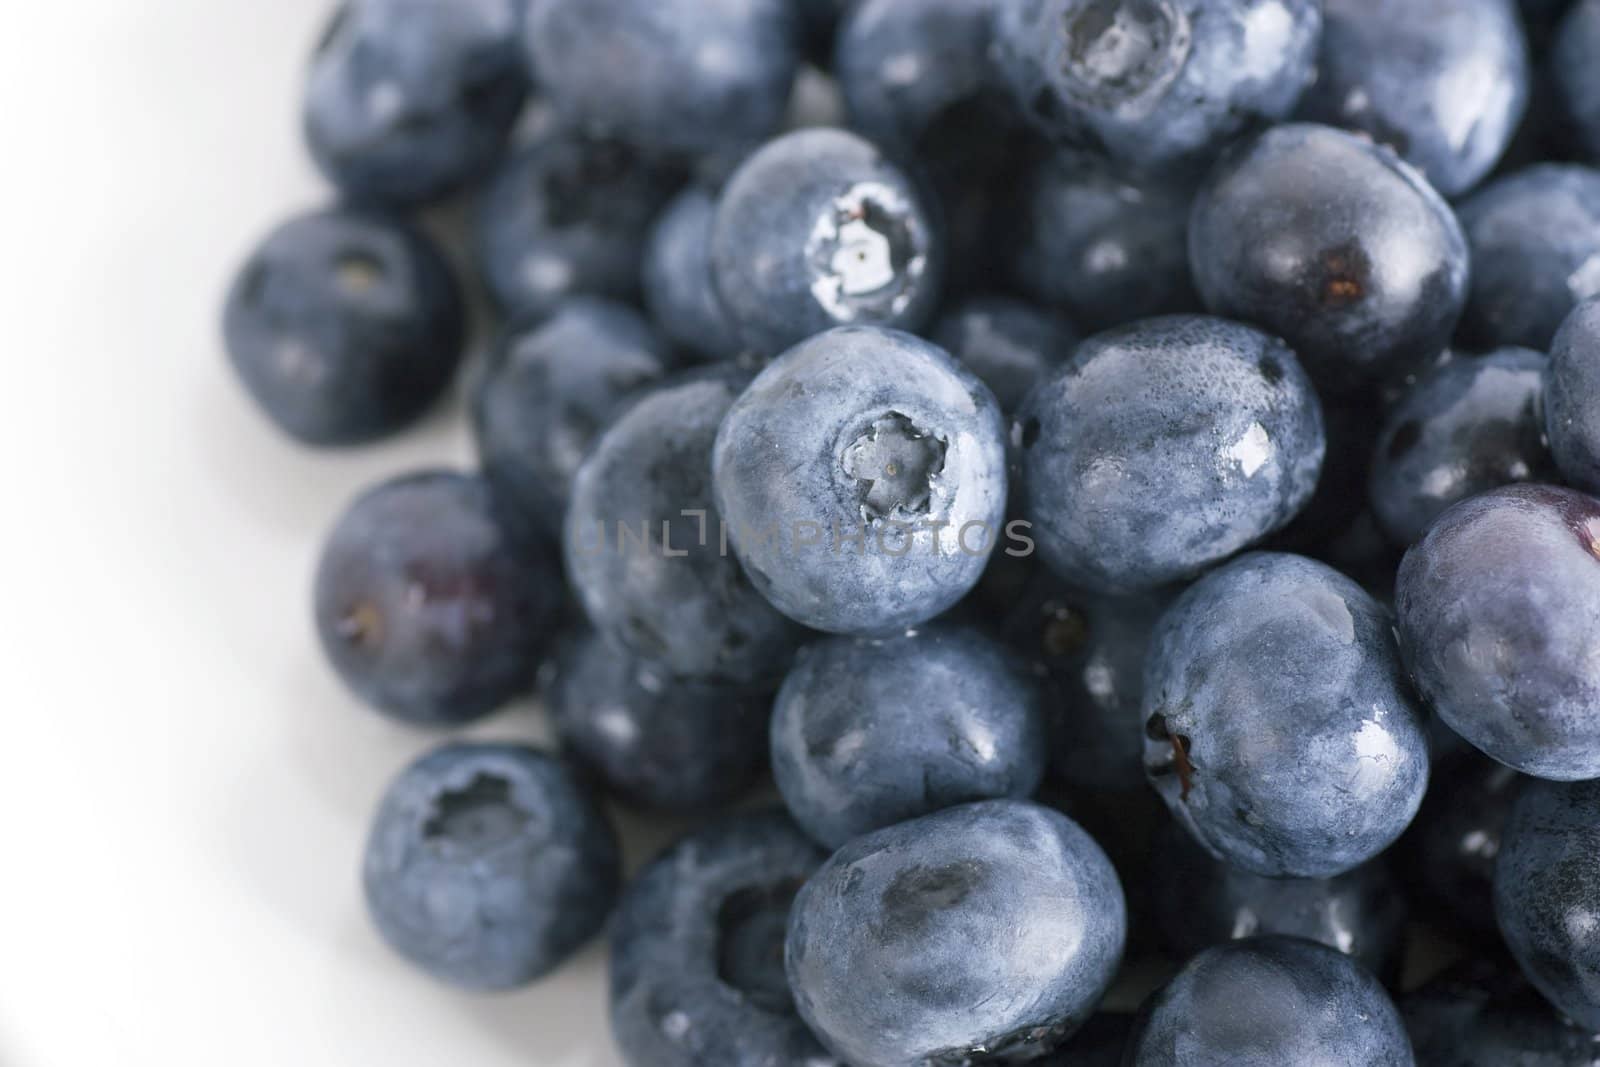 Fresh Blueberries by charlotteLake